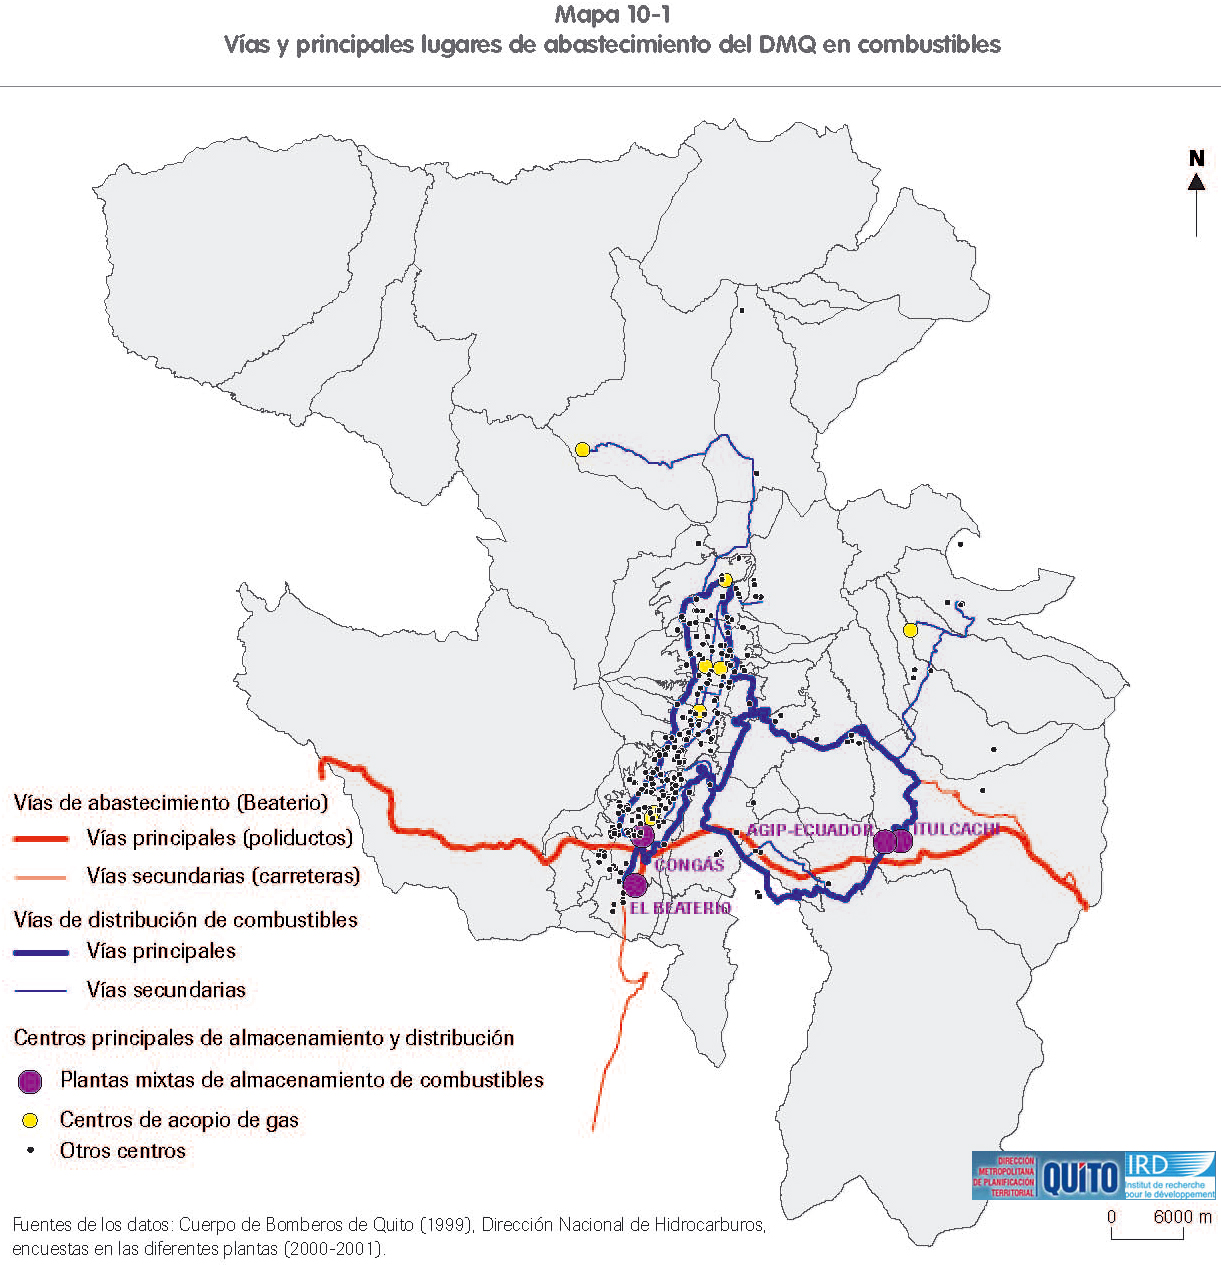 Mapa de Abastecimiento del Distrito Metropolitano de Quito en combustibles 2000-2001